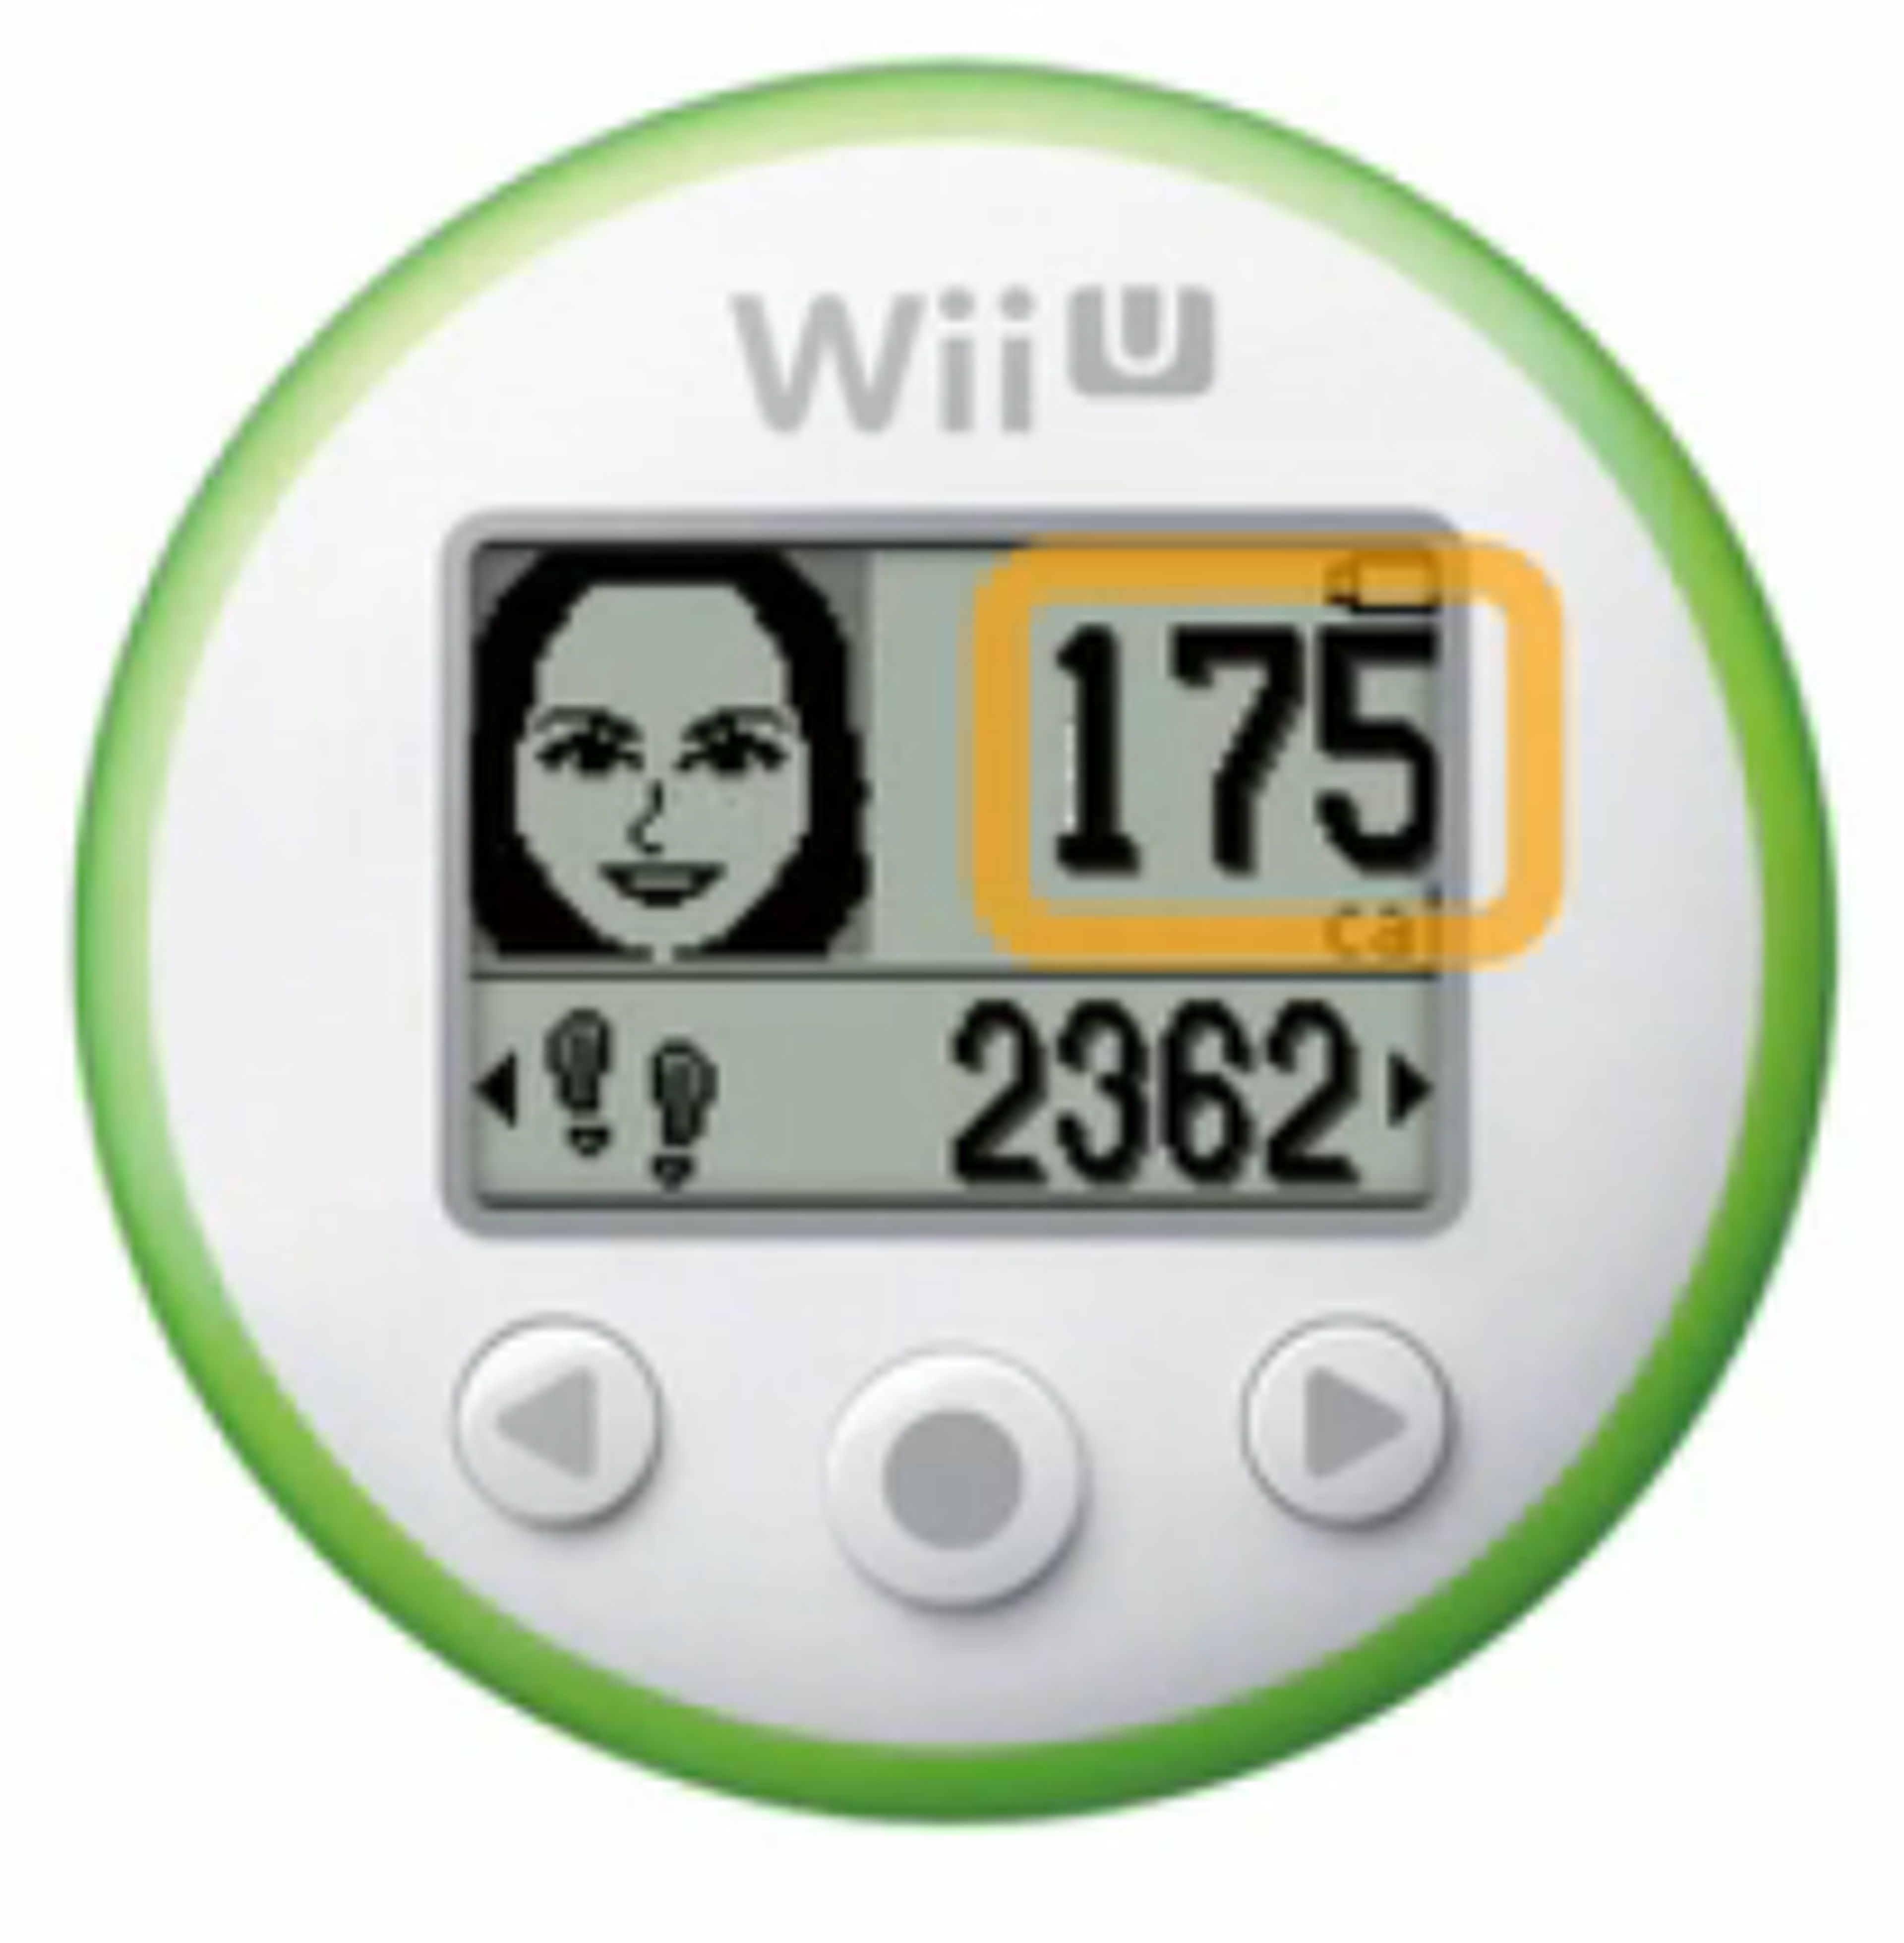 Wii Fit meter